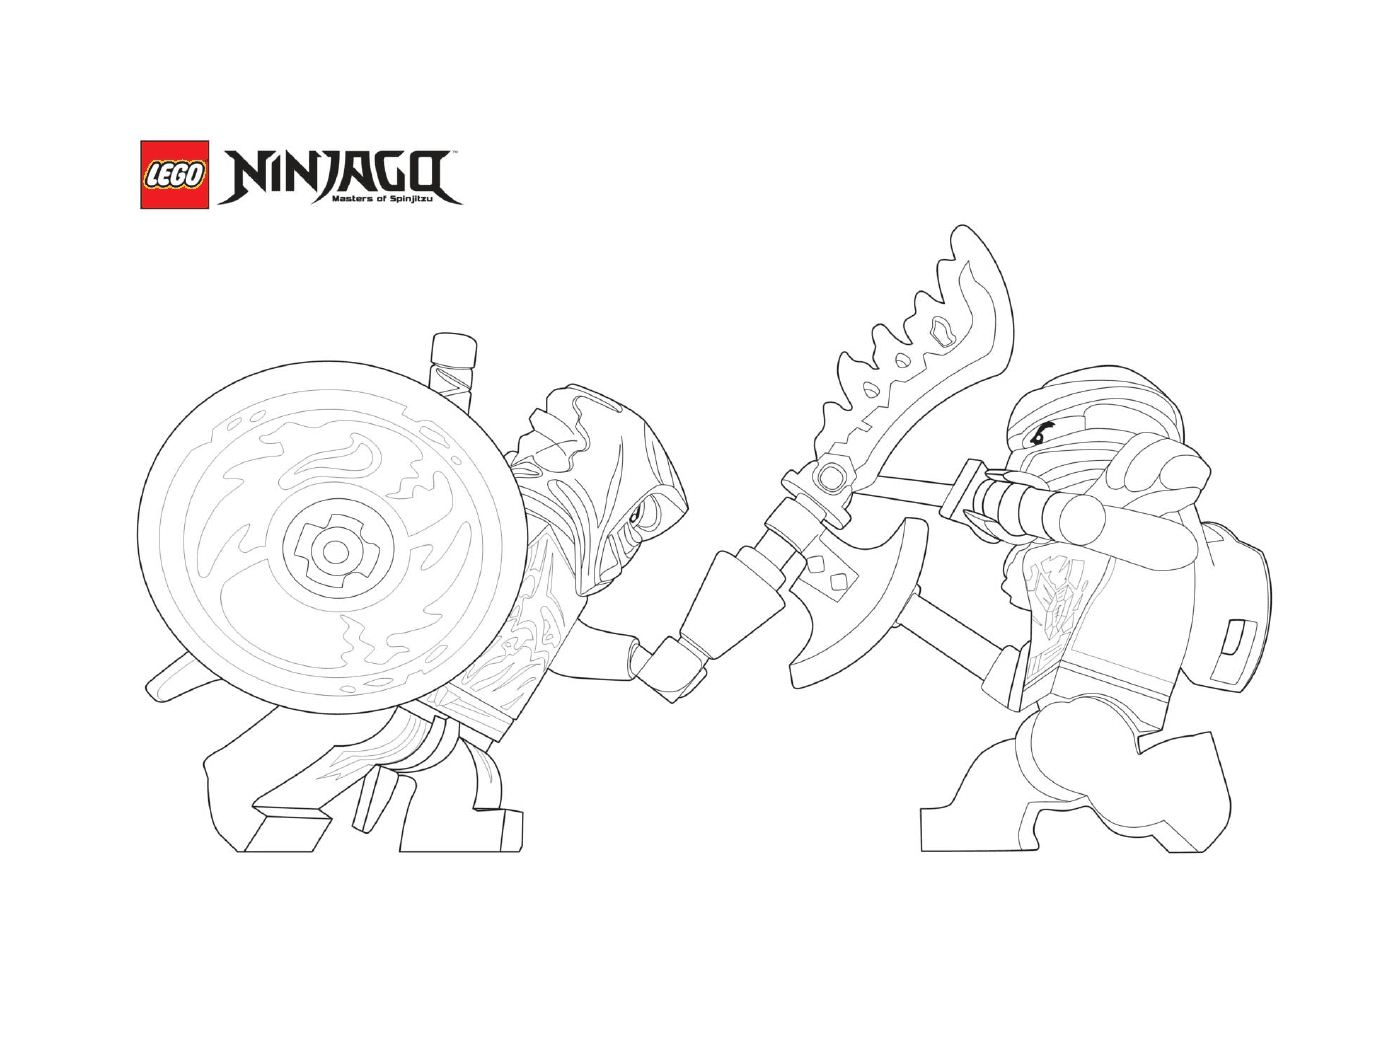  Due ninjago in modalità combattimento 